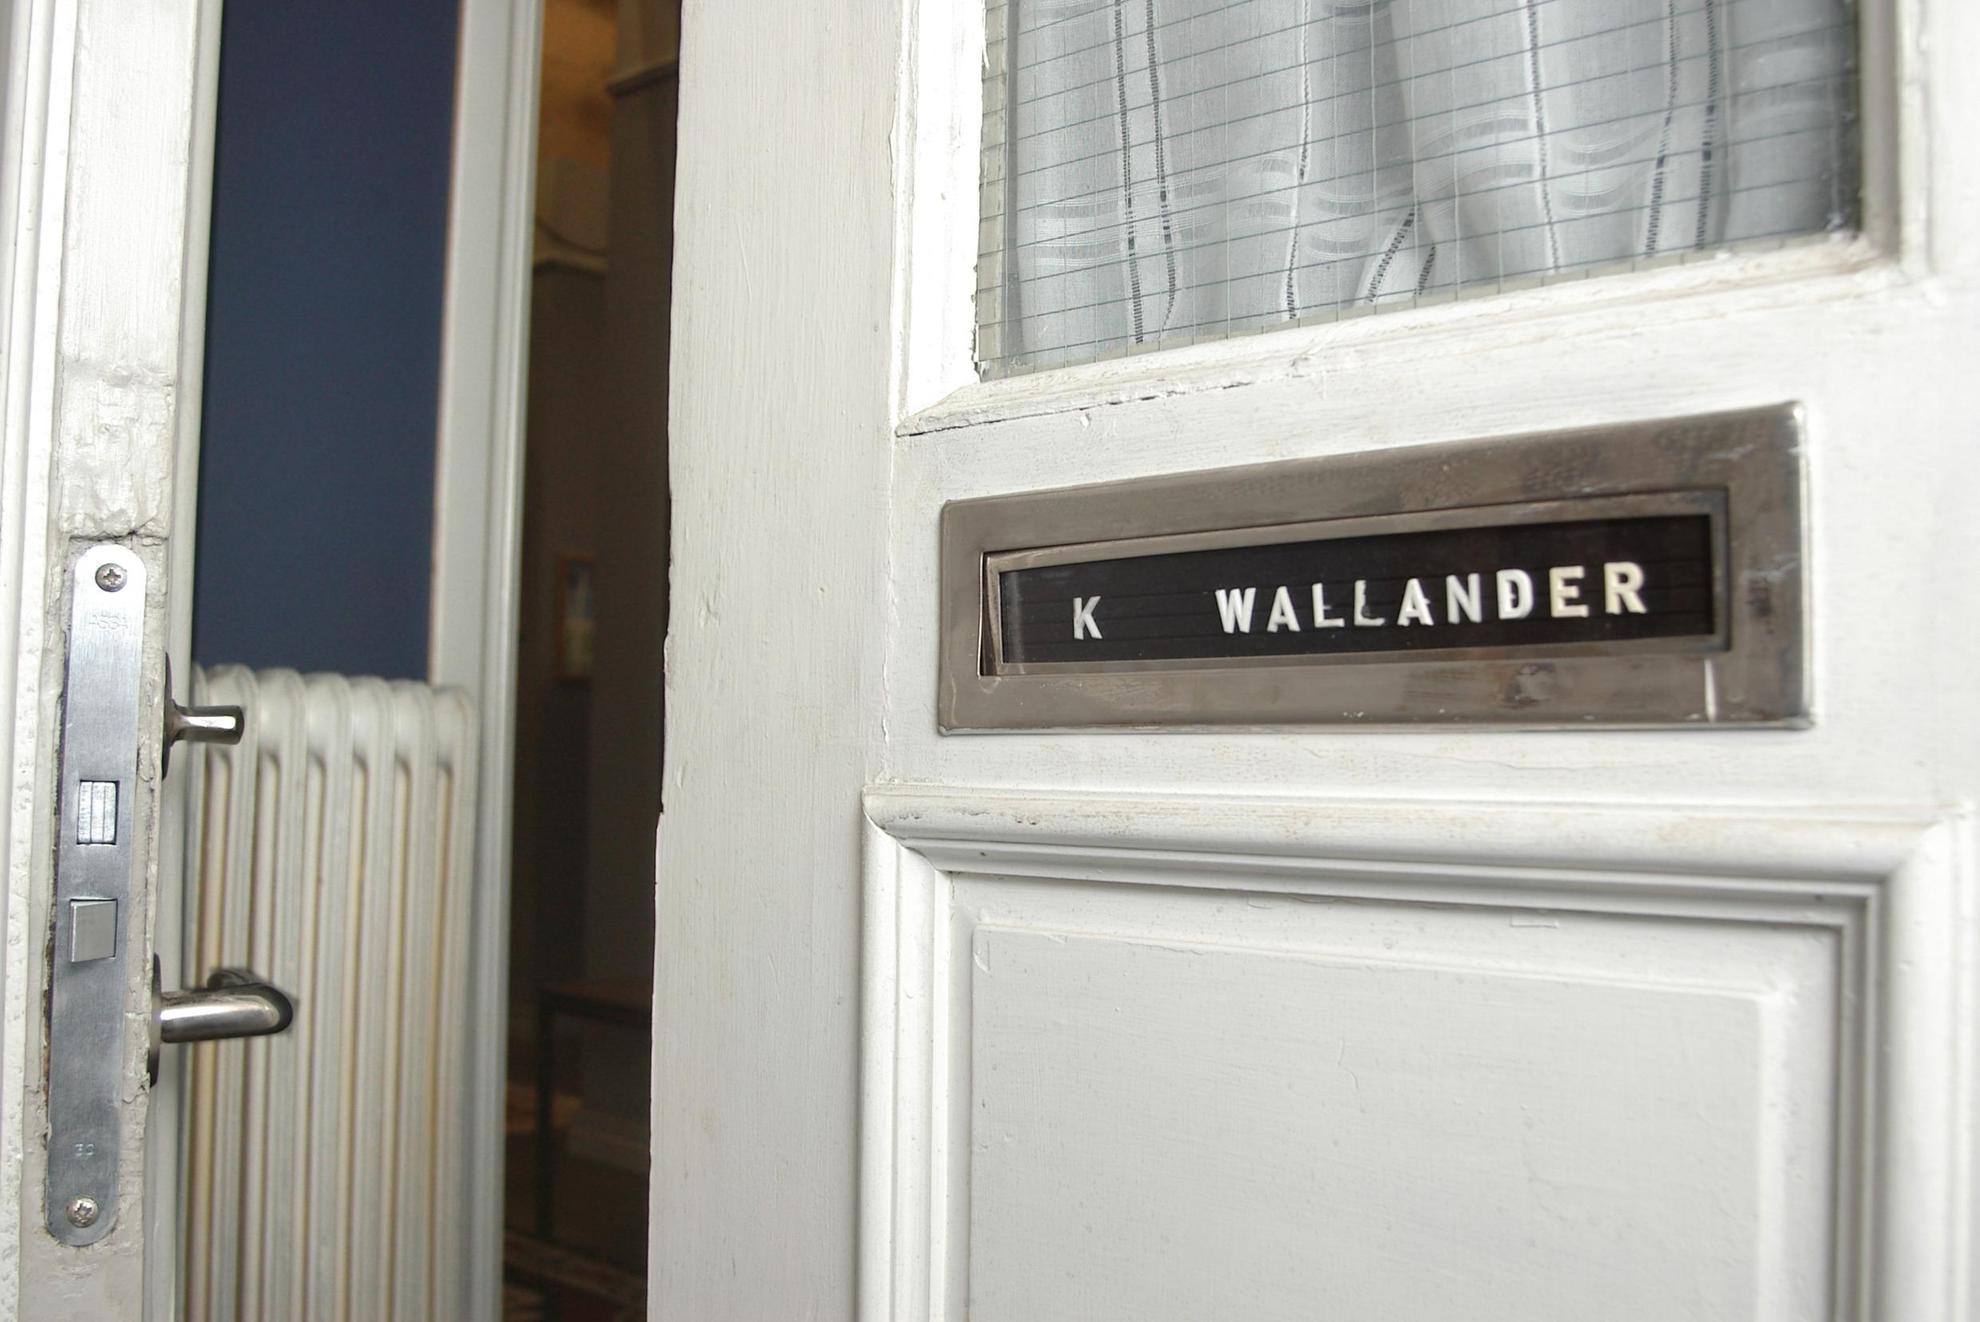 A door is half opened. It has 'K Wallander' written on it.